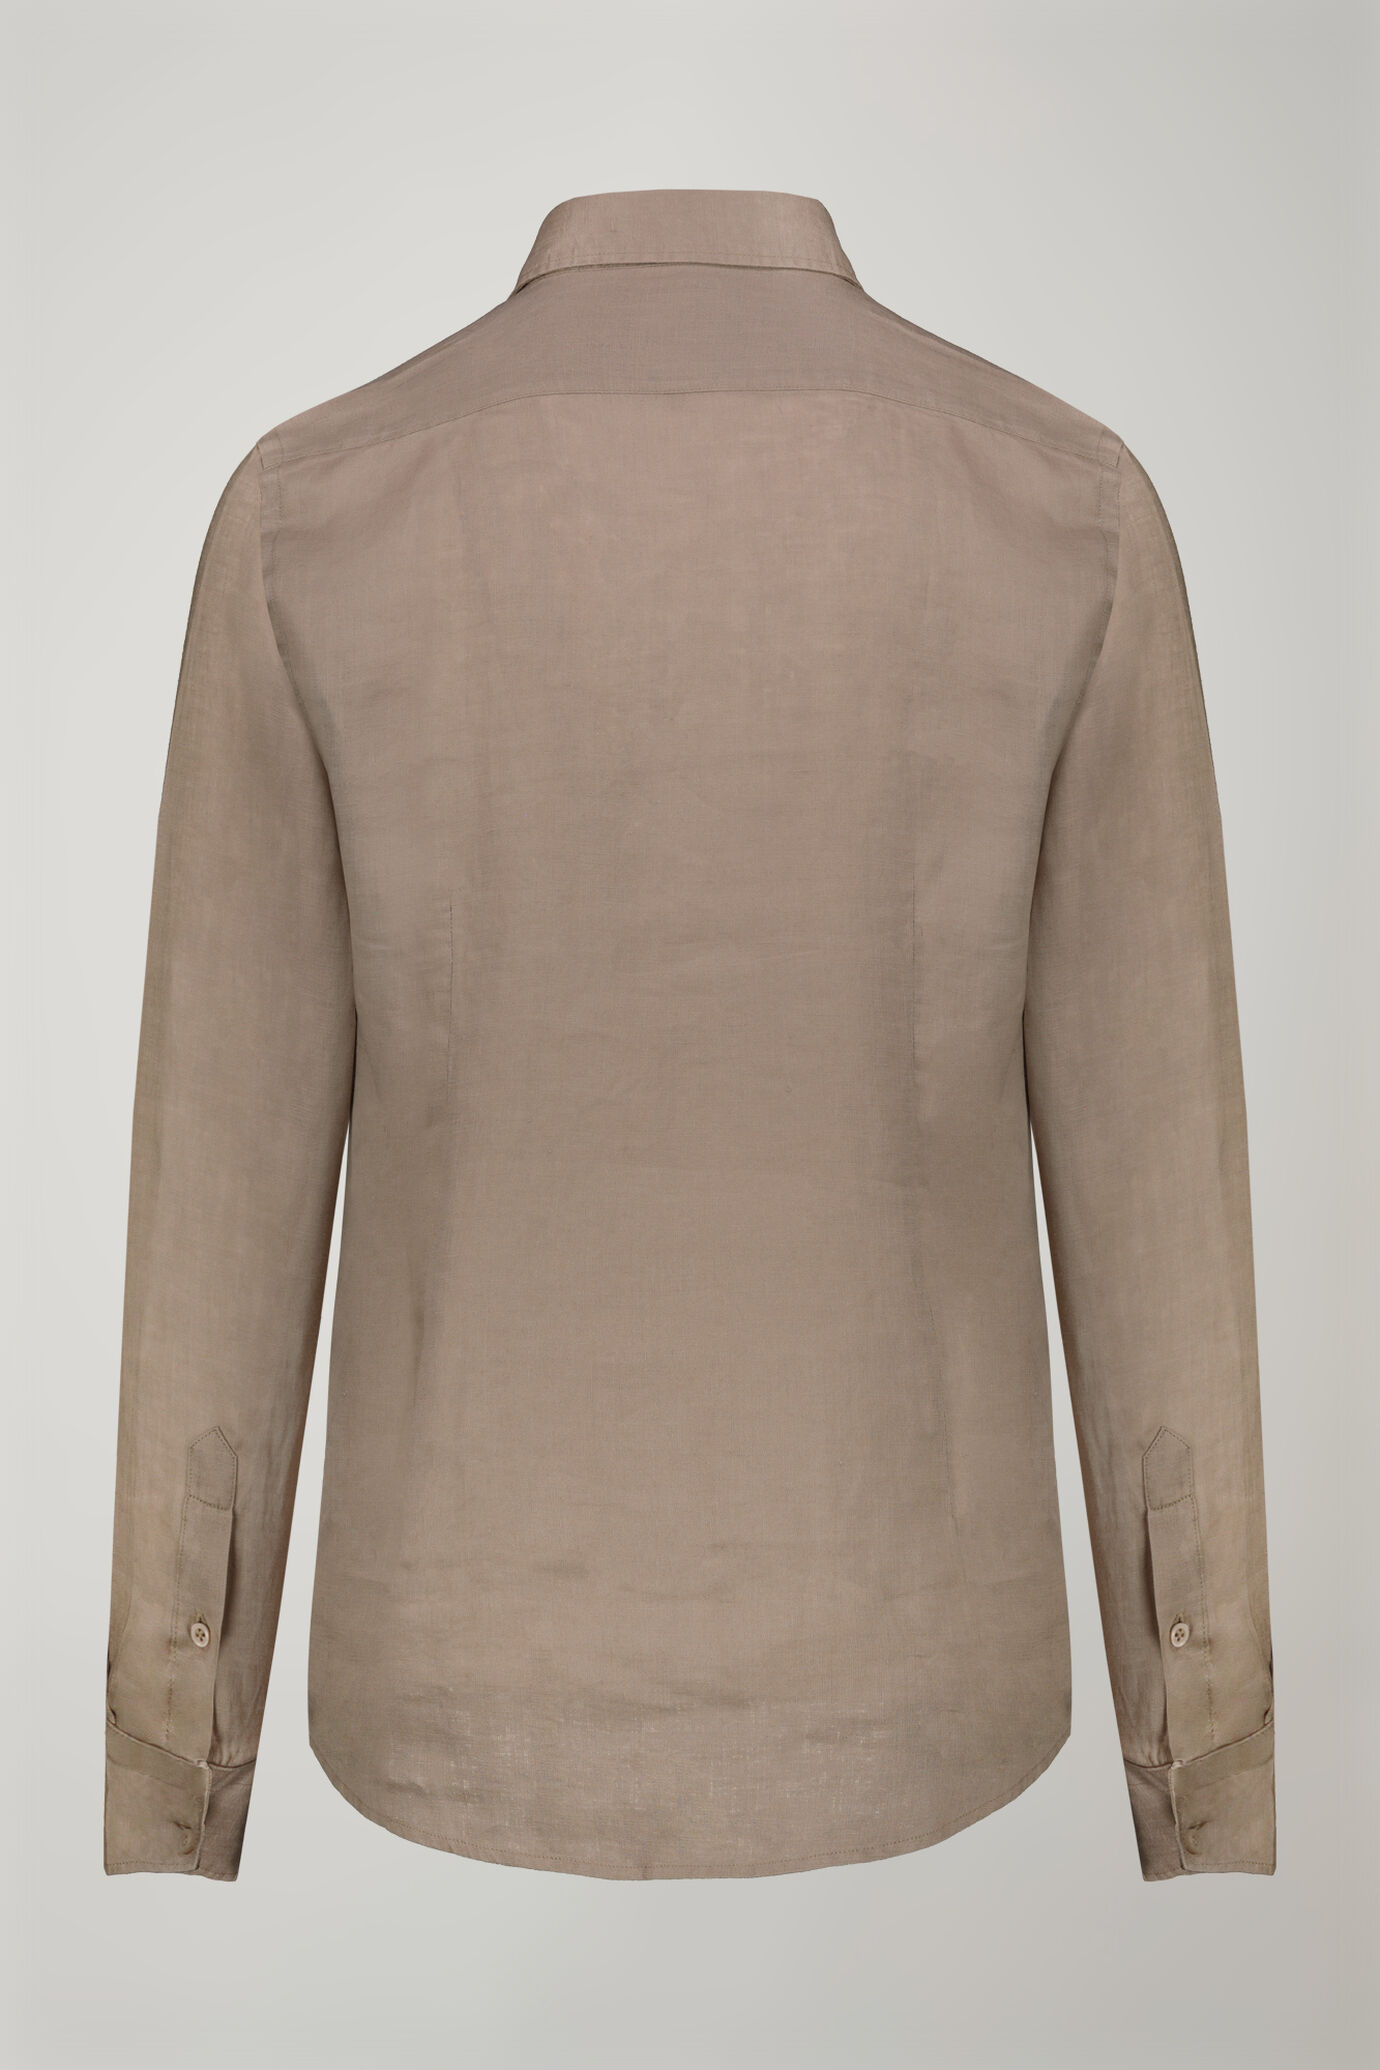 Camicia casual uomo collo classico 100% lino comfort fit image number 6